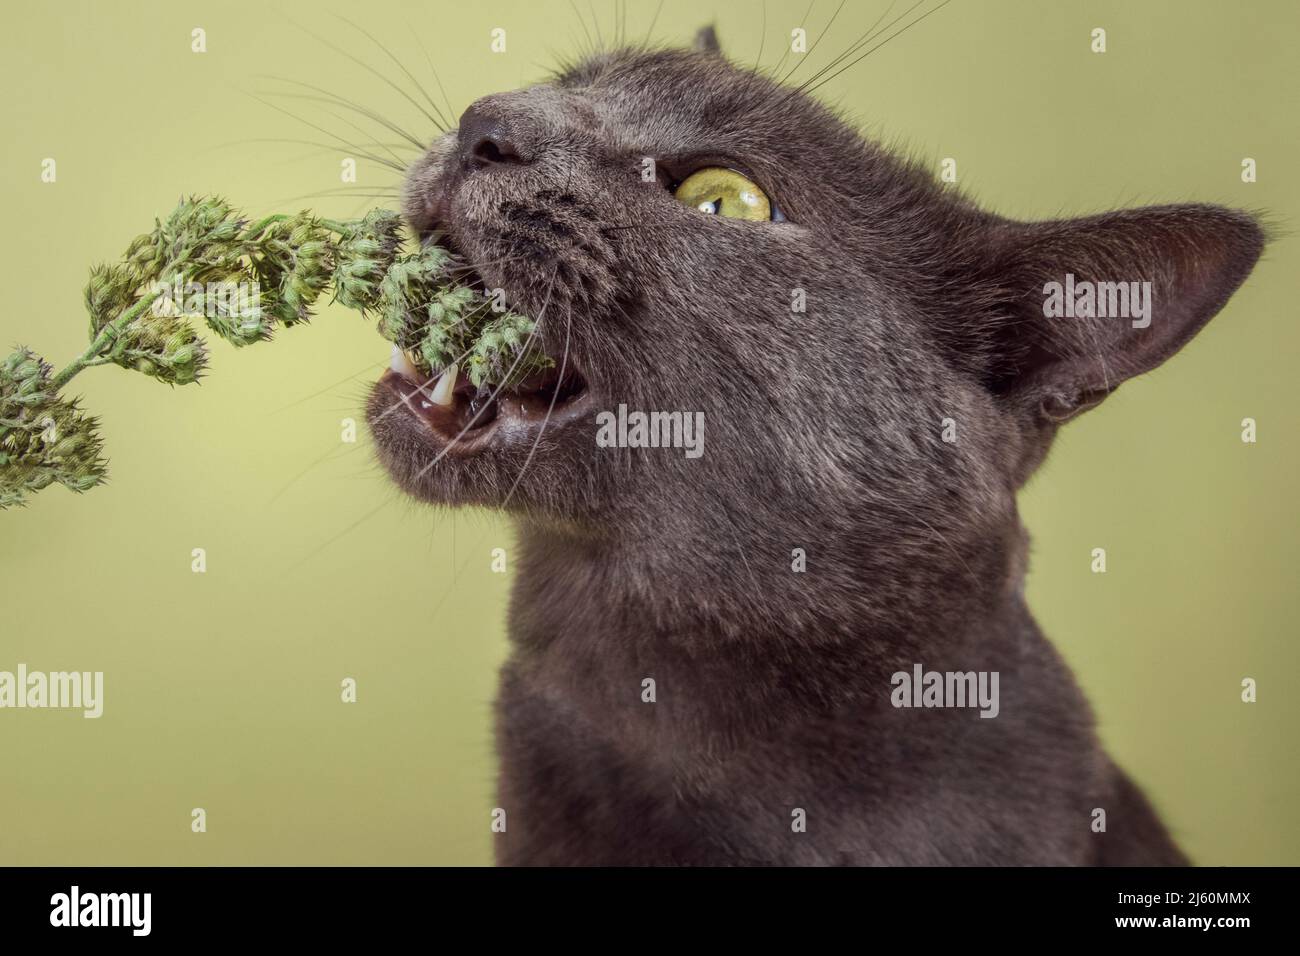 Moderno estudio retrato de un gato con entusiasmo comer un brote de catnip. Foto de stock